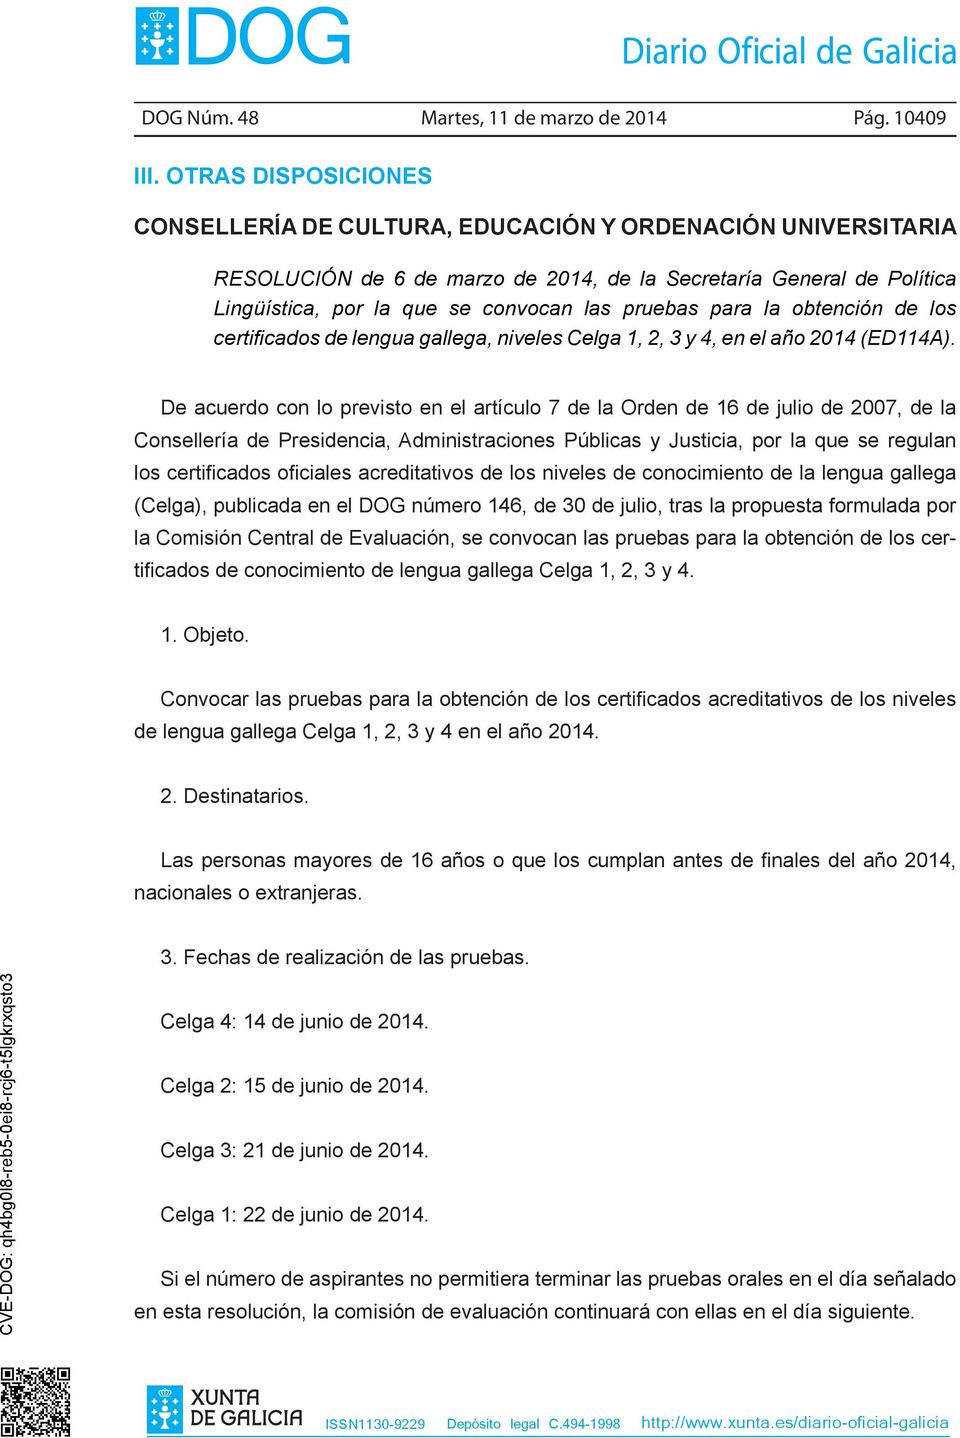 para la obtención de los certificados de lengua gallega, niveles Celga 1, 2, 3 y 4, en el año 2014 (ED114A).